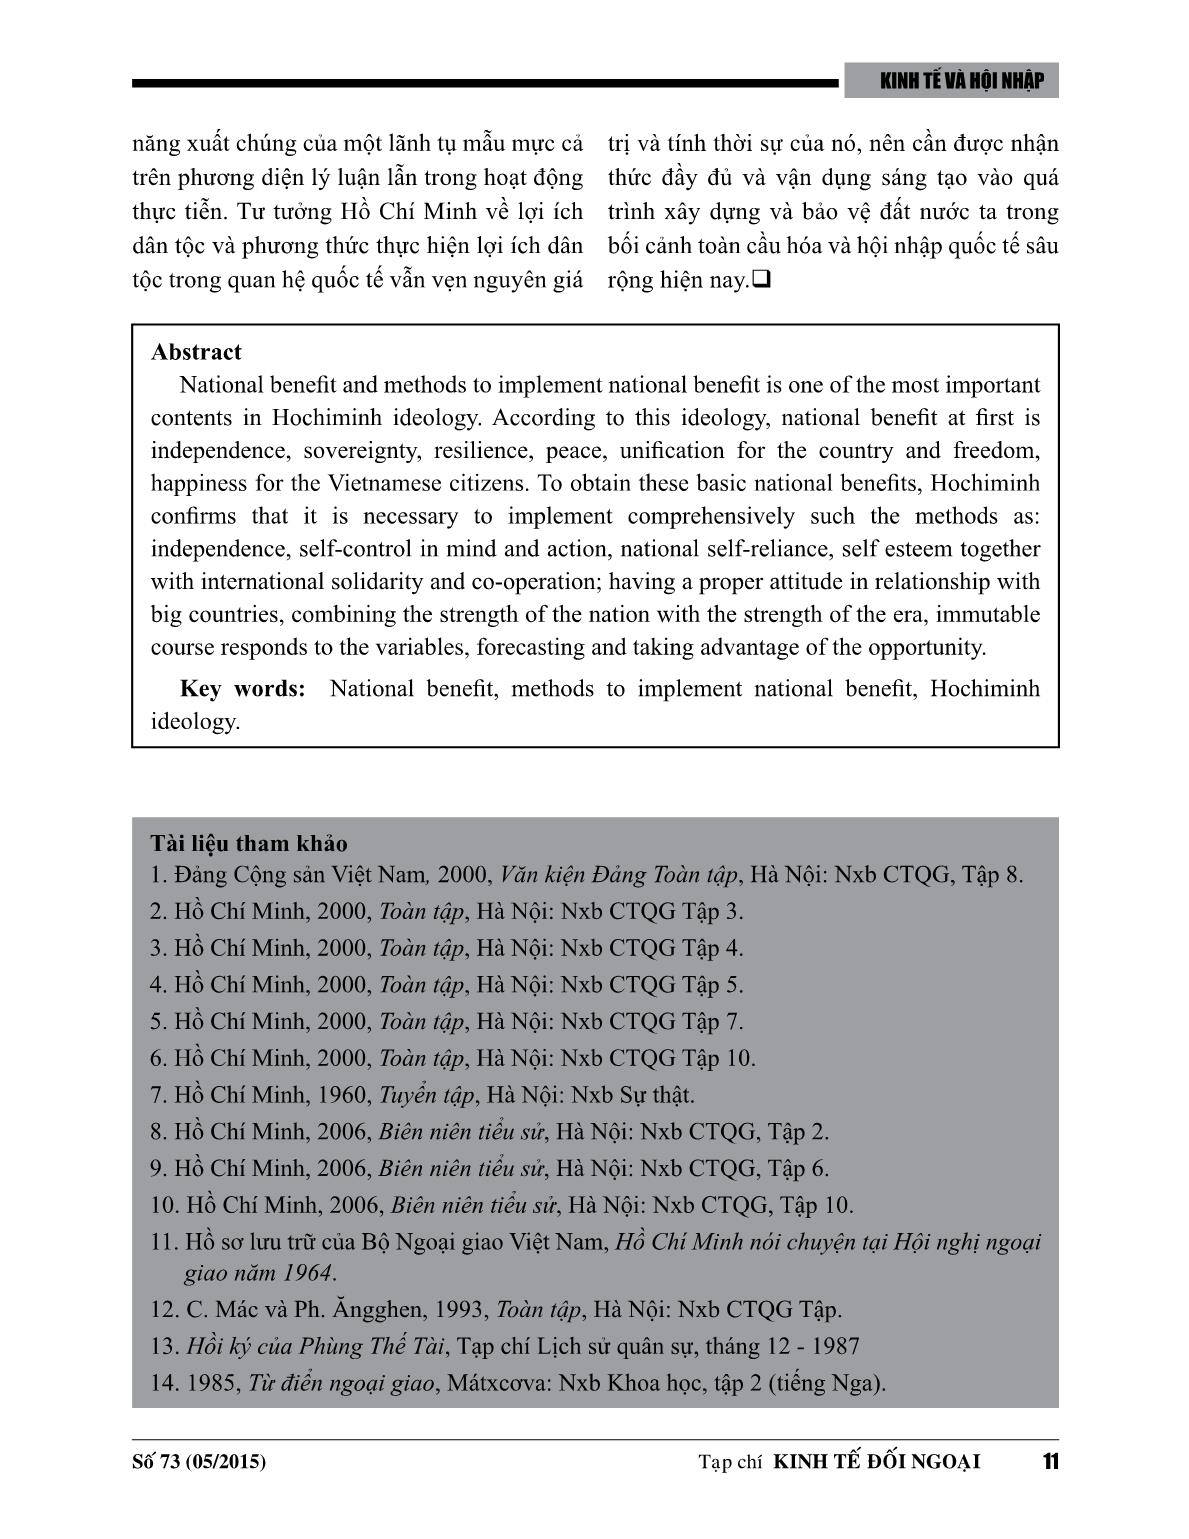 Lợi ích dân tộc và phương thức thực hiện lợi ích dân tộc theo tủ tưởng Hồ Chí Minh trang 9